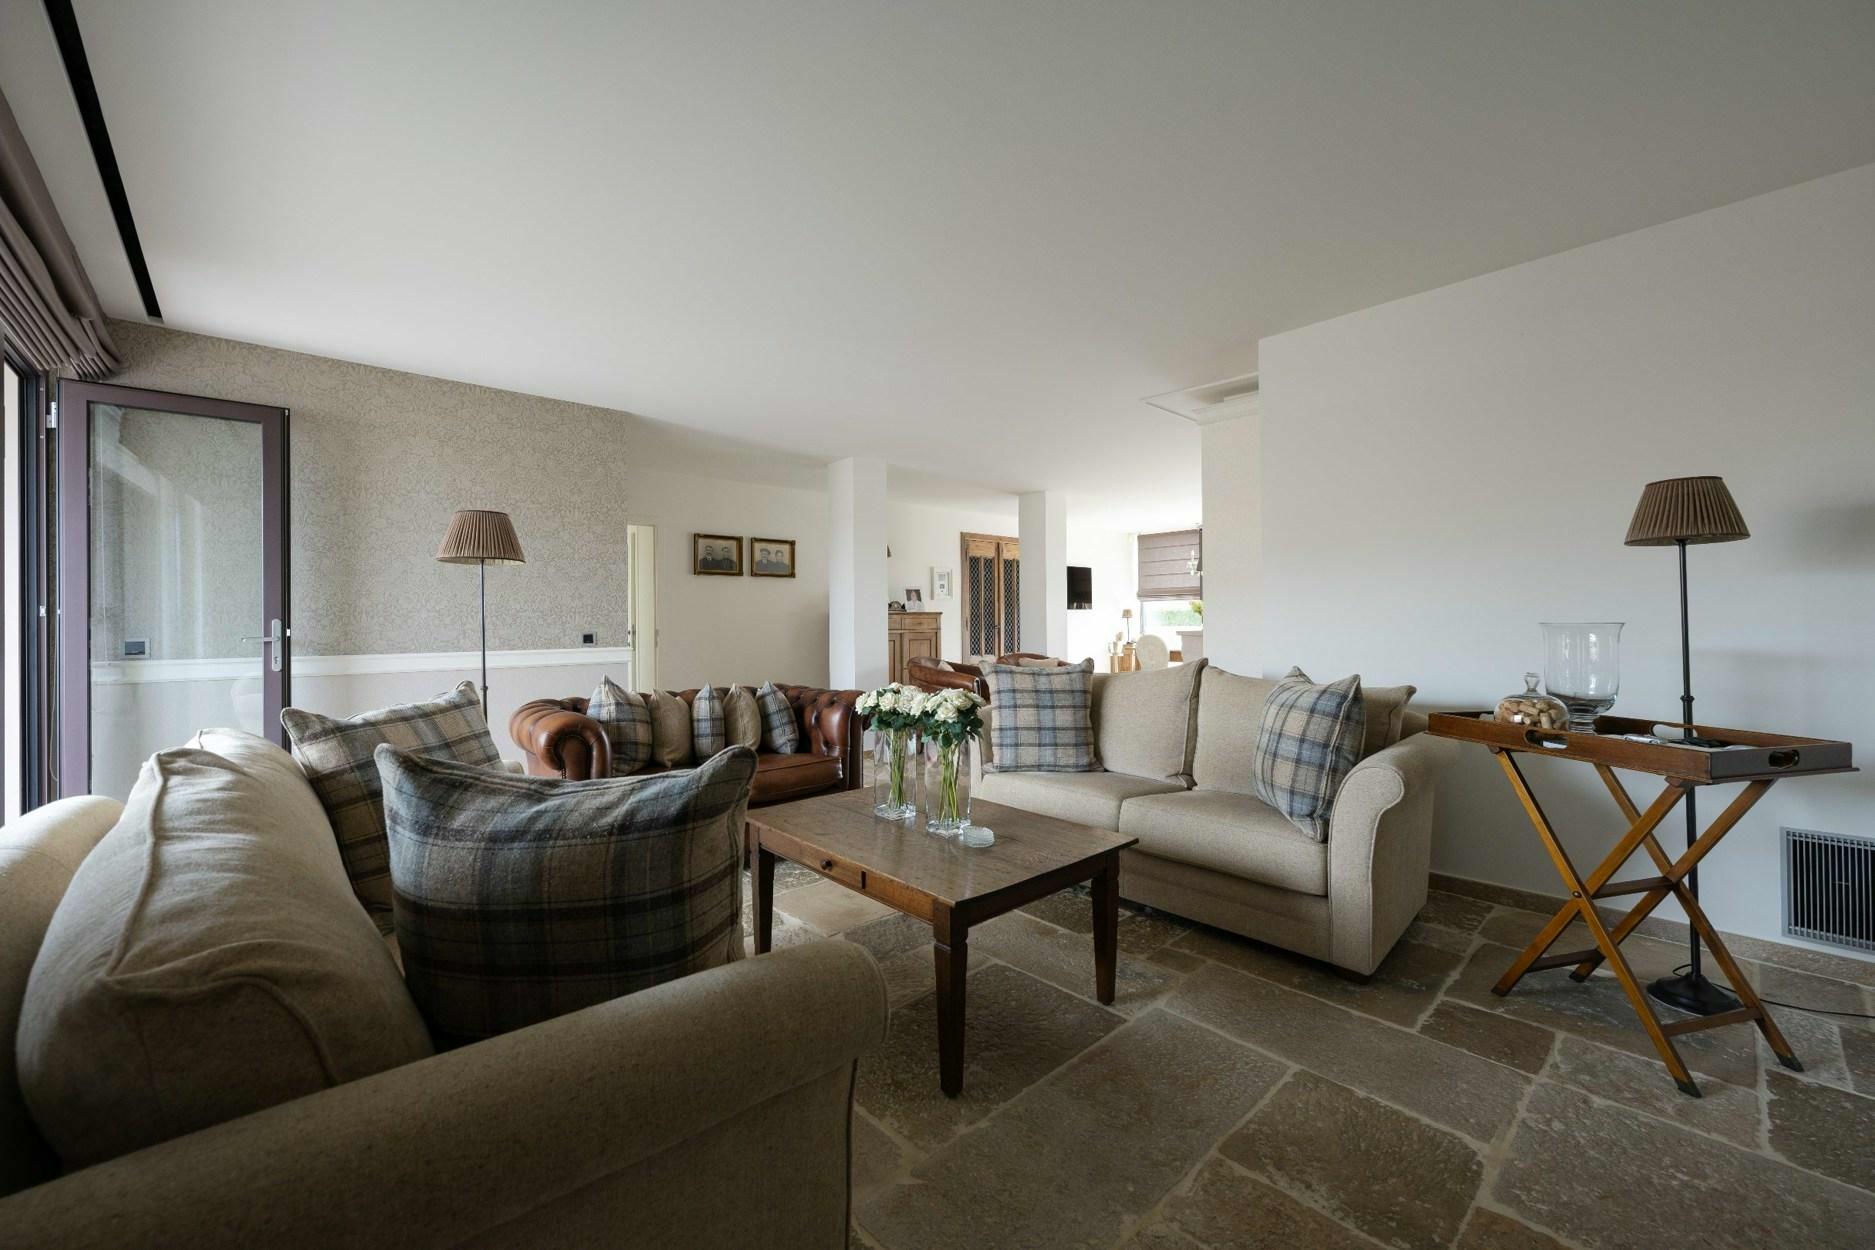 Exclusief luxe appartement met een bewoonbare oppervlakte van 179m2 en terras van 56m2.